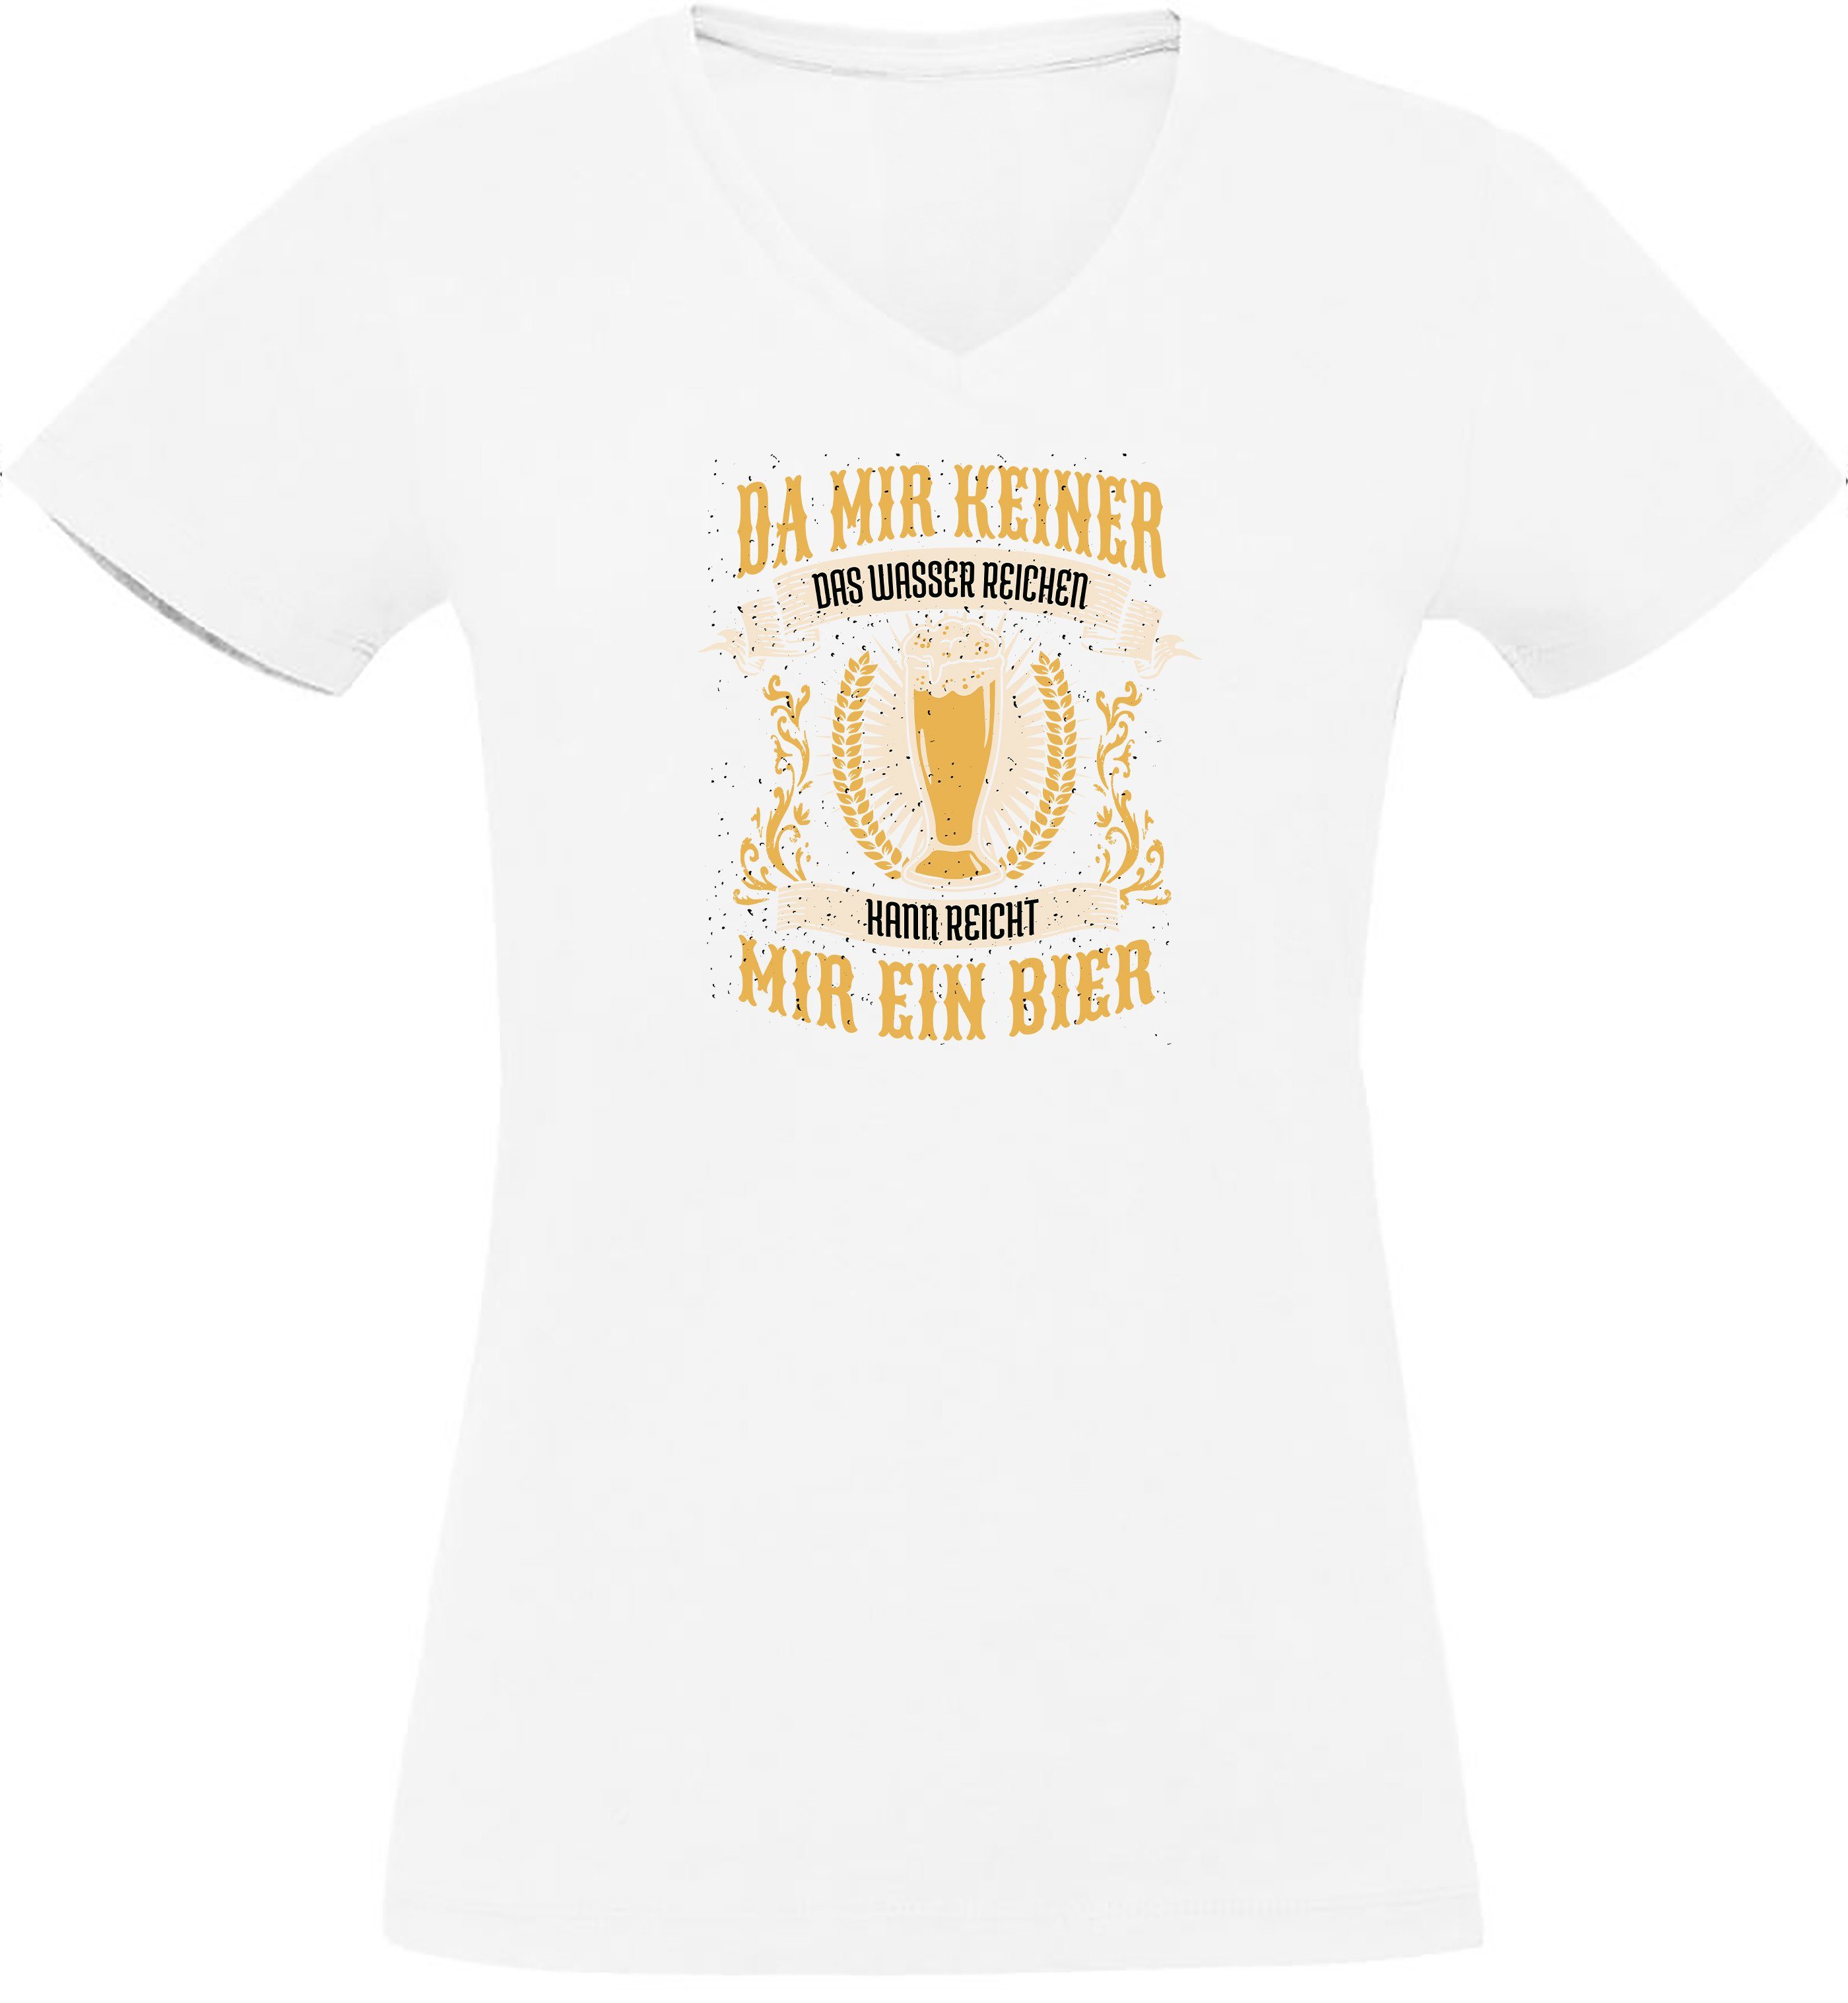 V-Ausschnitt Reicht - T-Shirt Bier weiss Oktoberfest Shirt Slim Print Fit, mir T-Shirt i308 Damen MyDesign24 ein